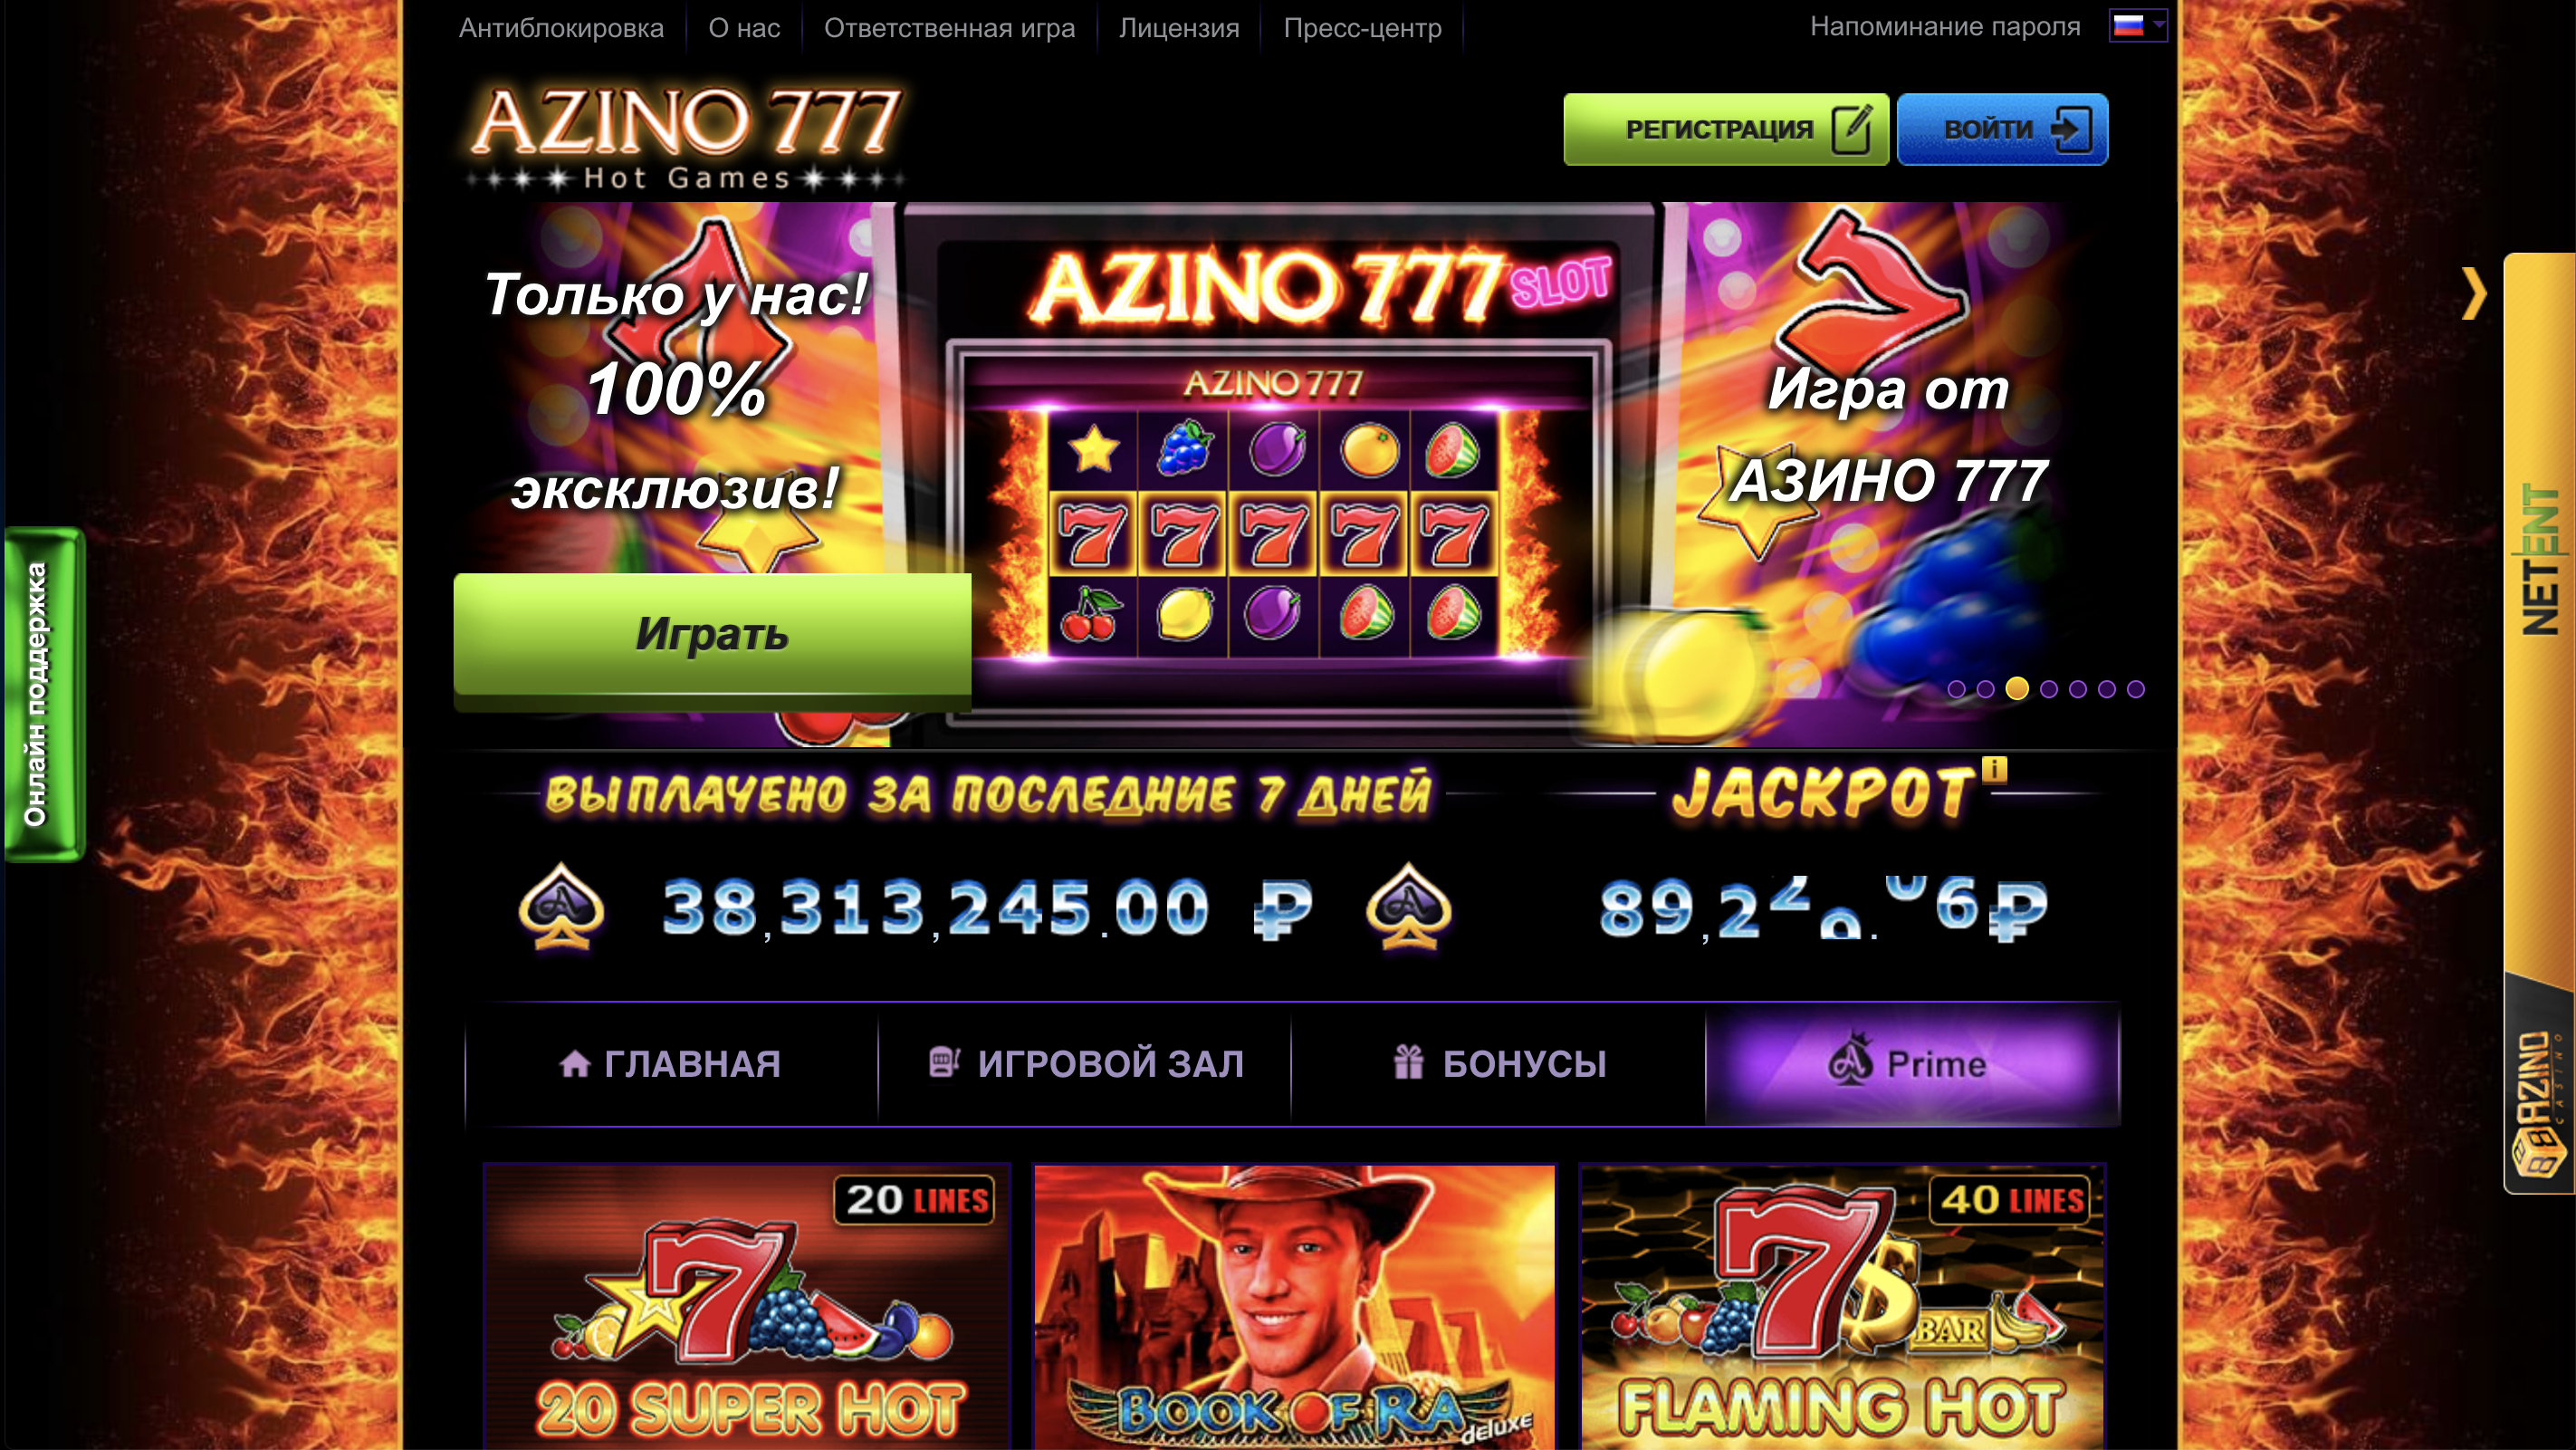 Азино 777 официальное зеркало cazino777 zone com. Казино азино777 бездепозитный бонус. Азино777 казино зеркало. Казино три топора 777.